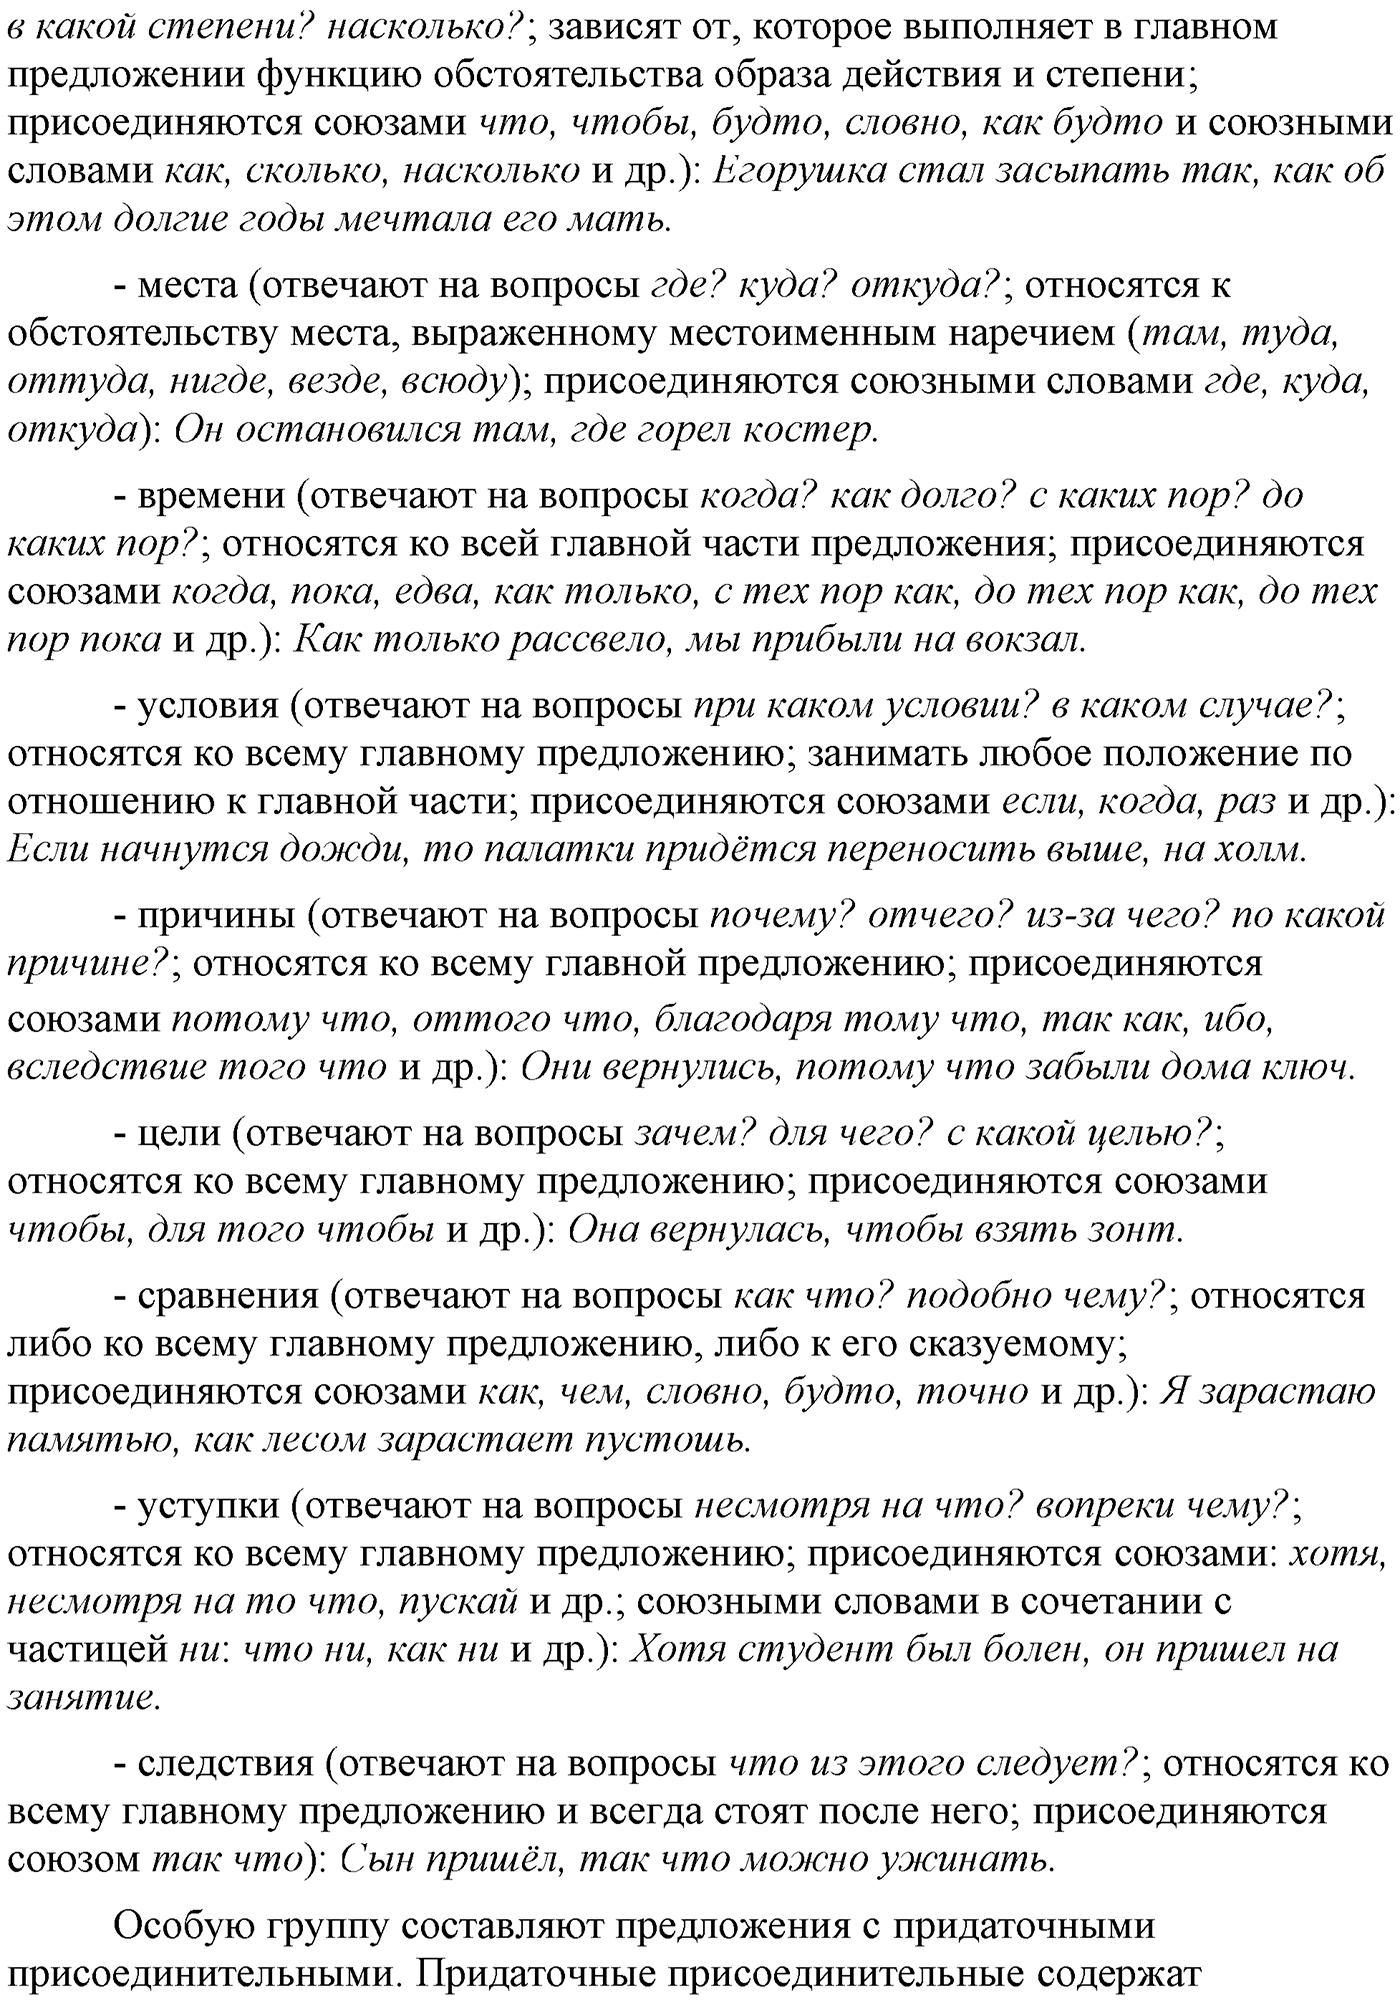 Вопросы и задания для повторения, страница 121 русский язык 9 класс Бархударов, Крючков, Максимов, Чешко, Николина